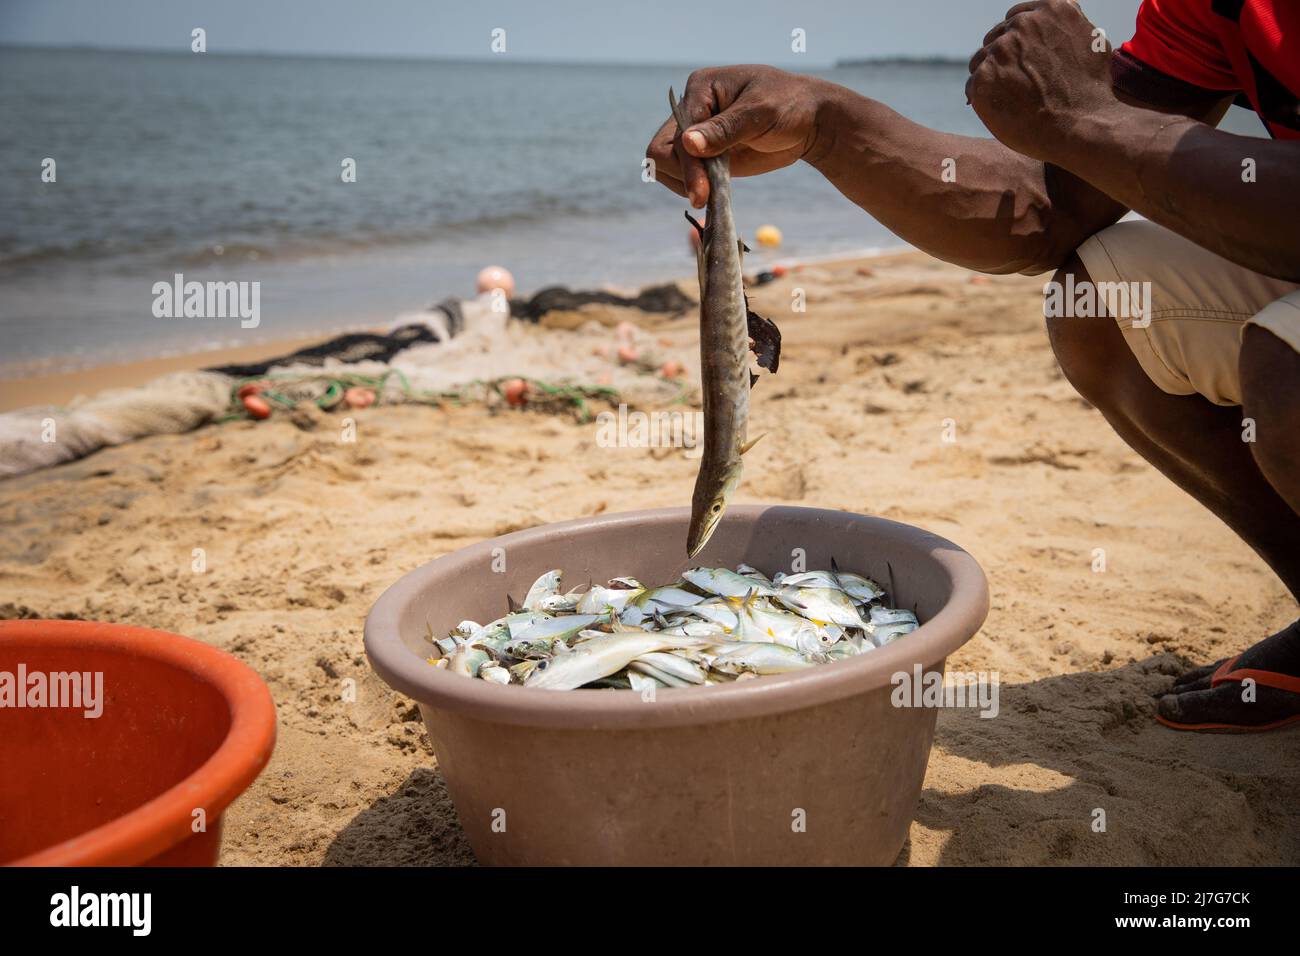 Gros plan de la main d'un pêcheur levant un poisson du seau à poisson qu'il vient de prendre après une séance de pêche Banque D'Images